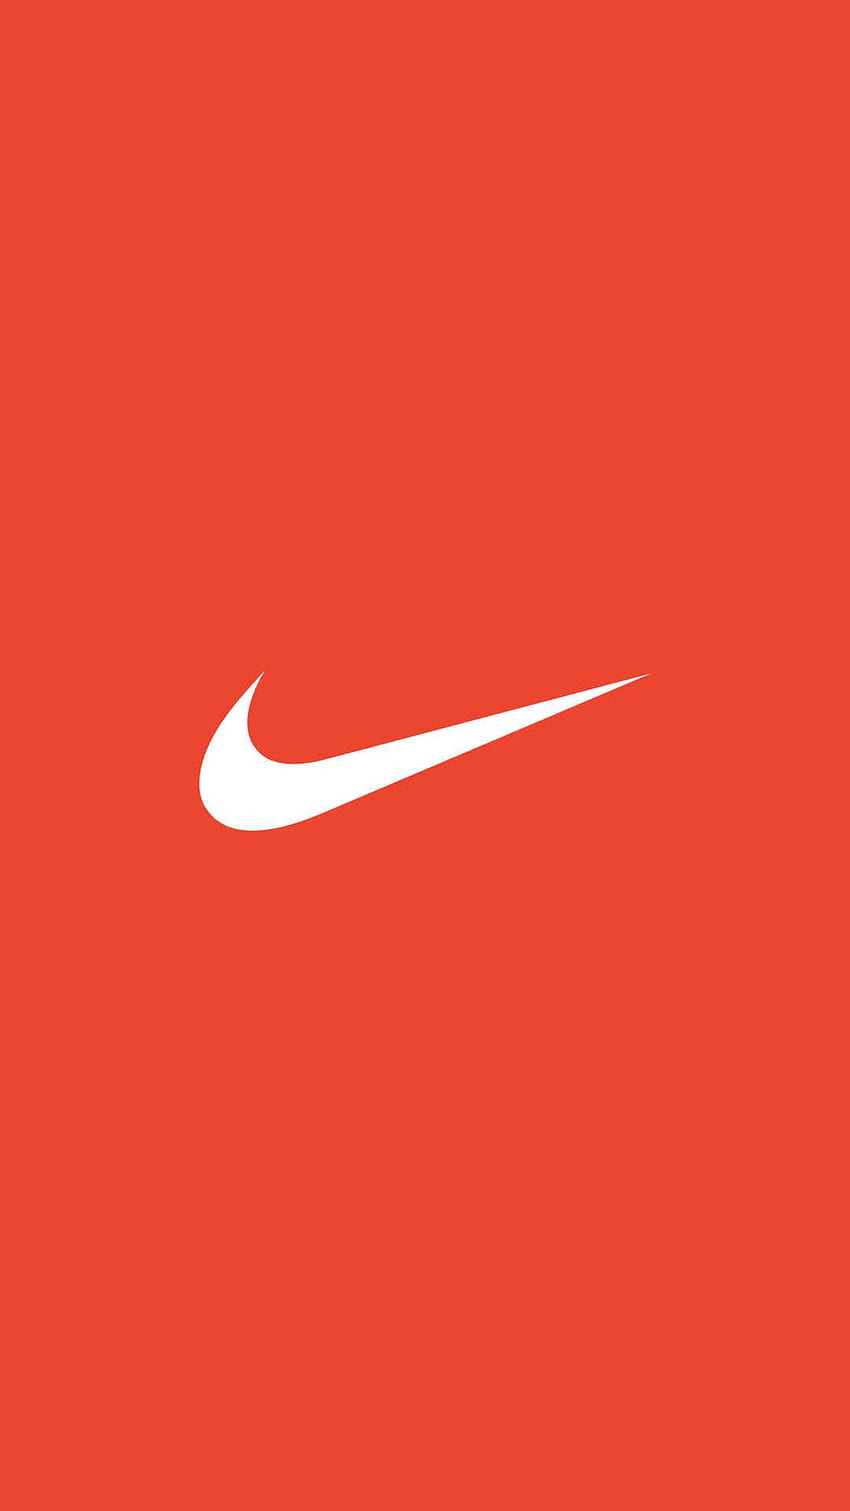 3D Nike Neon Logo by Rizon Parein on Dribbble